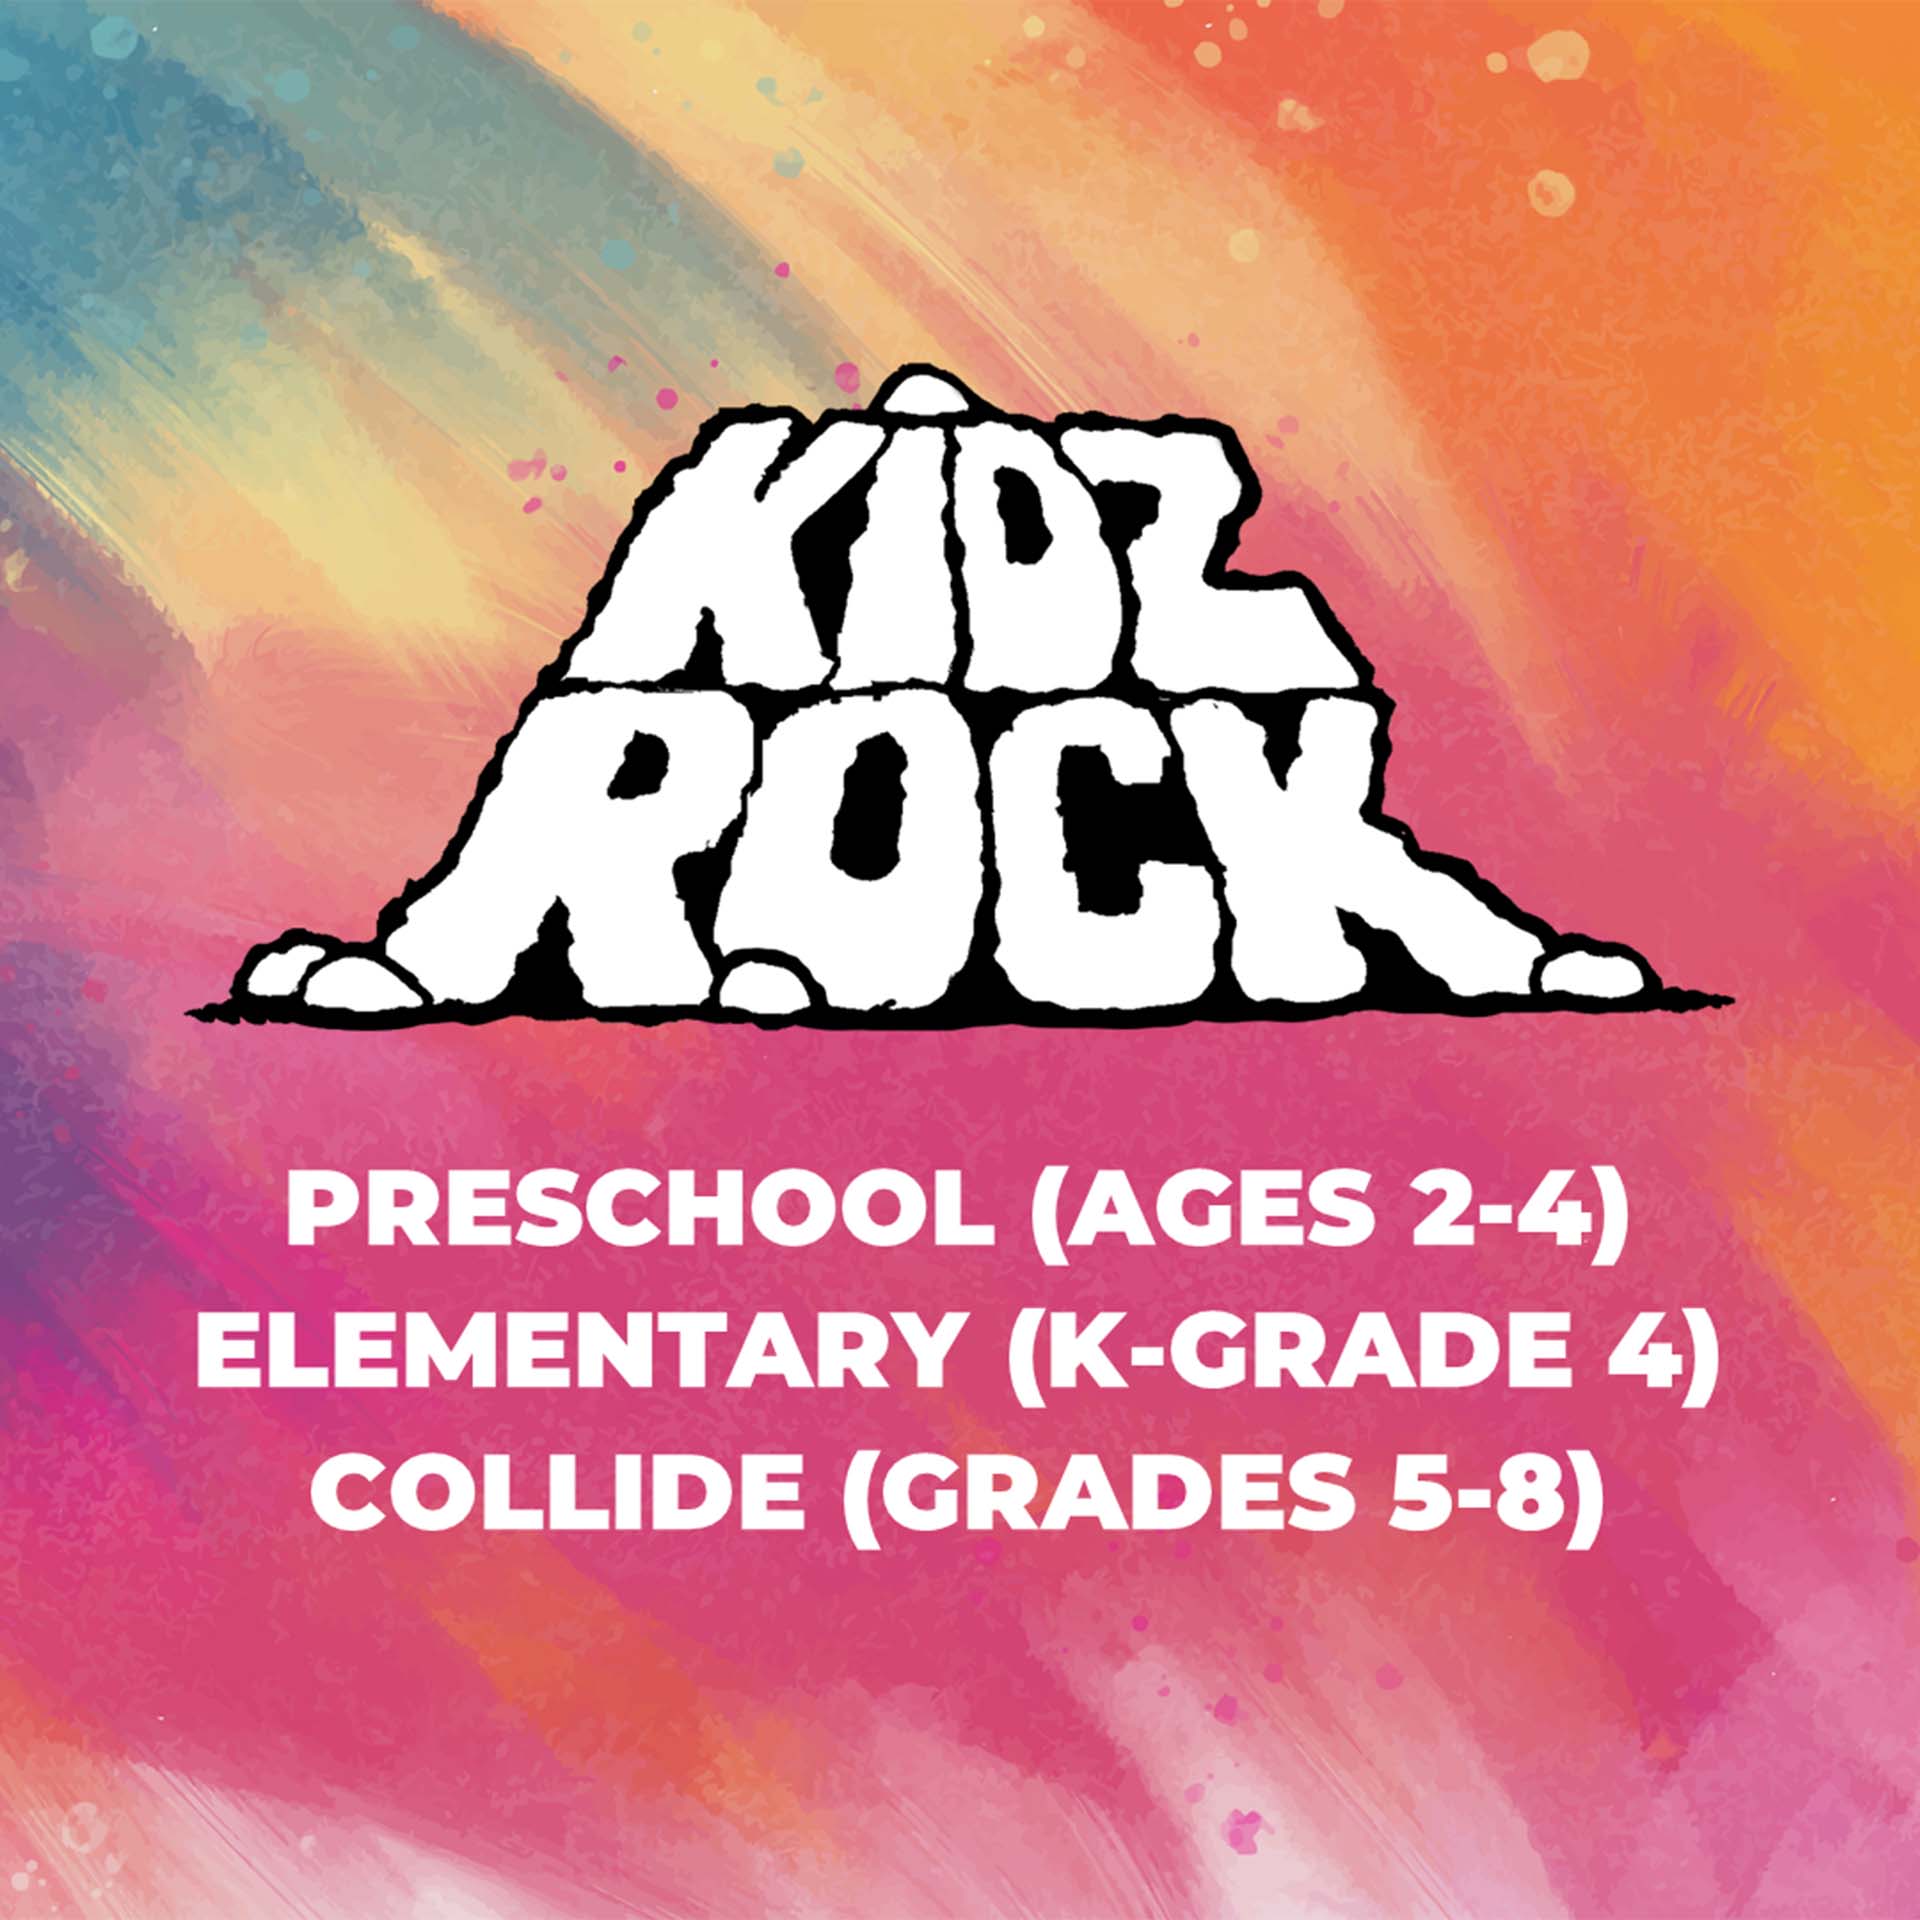 NVC – Kidz Rock 